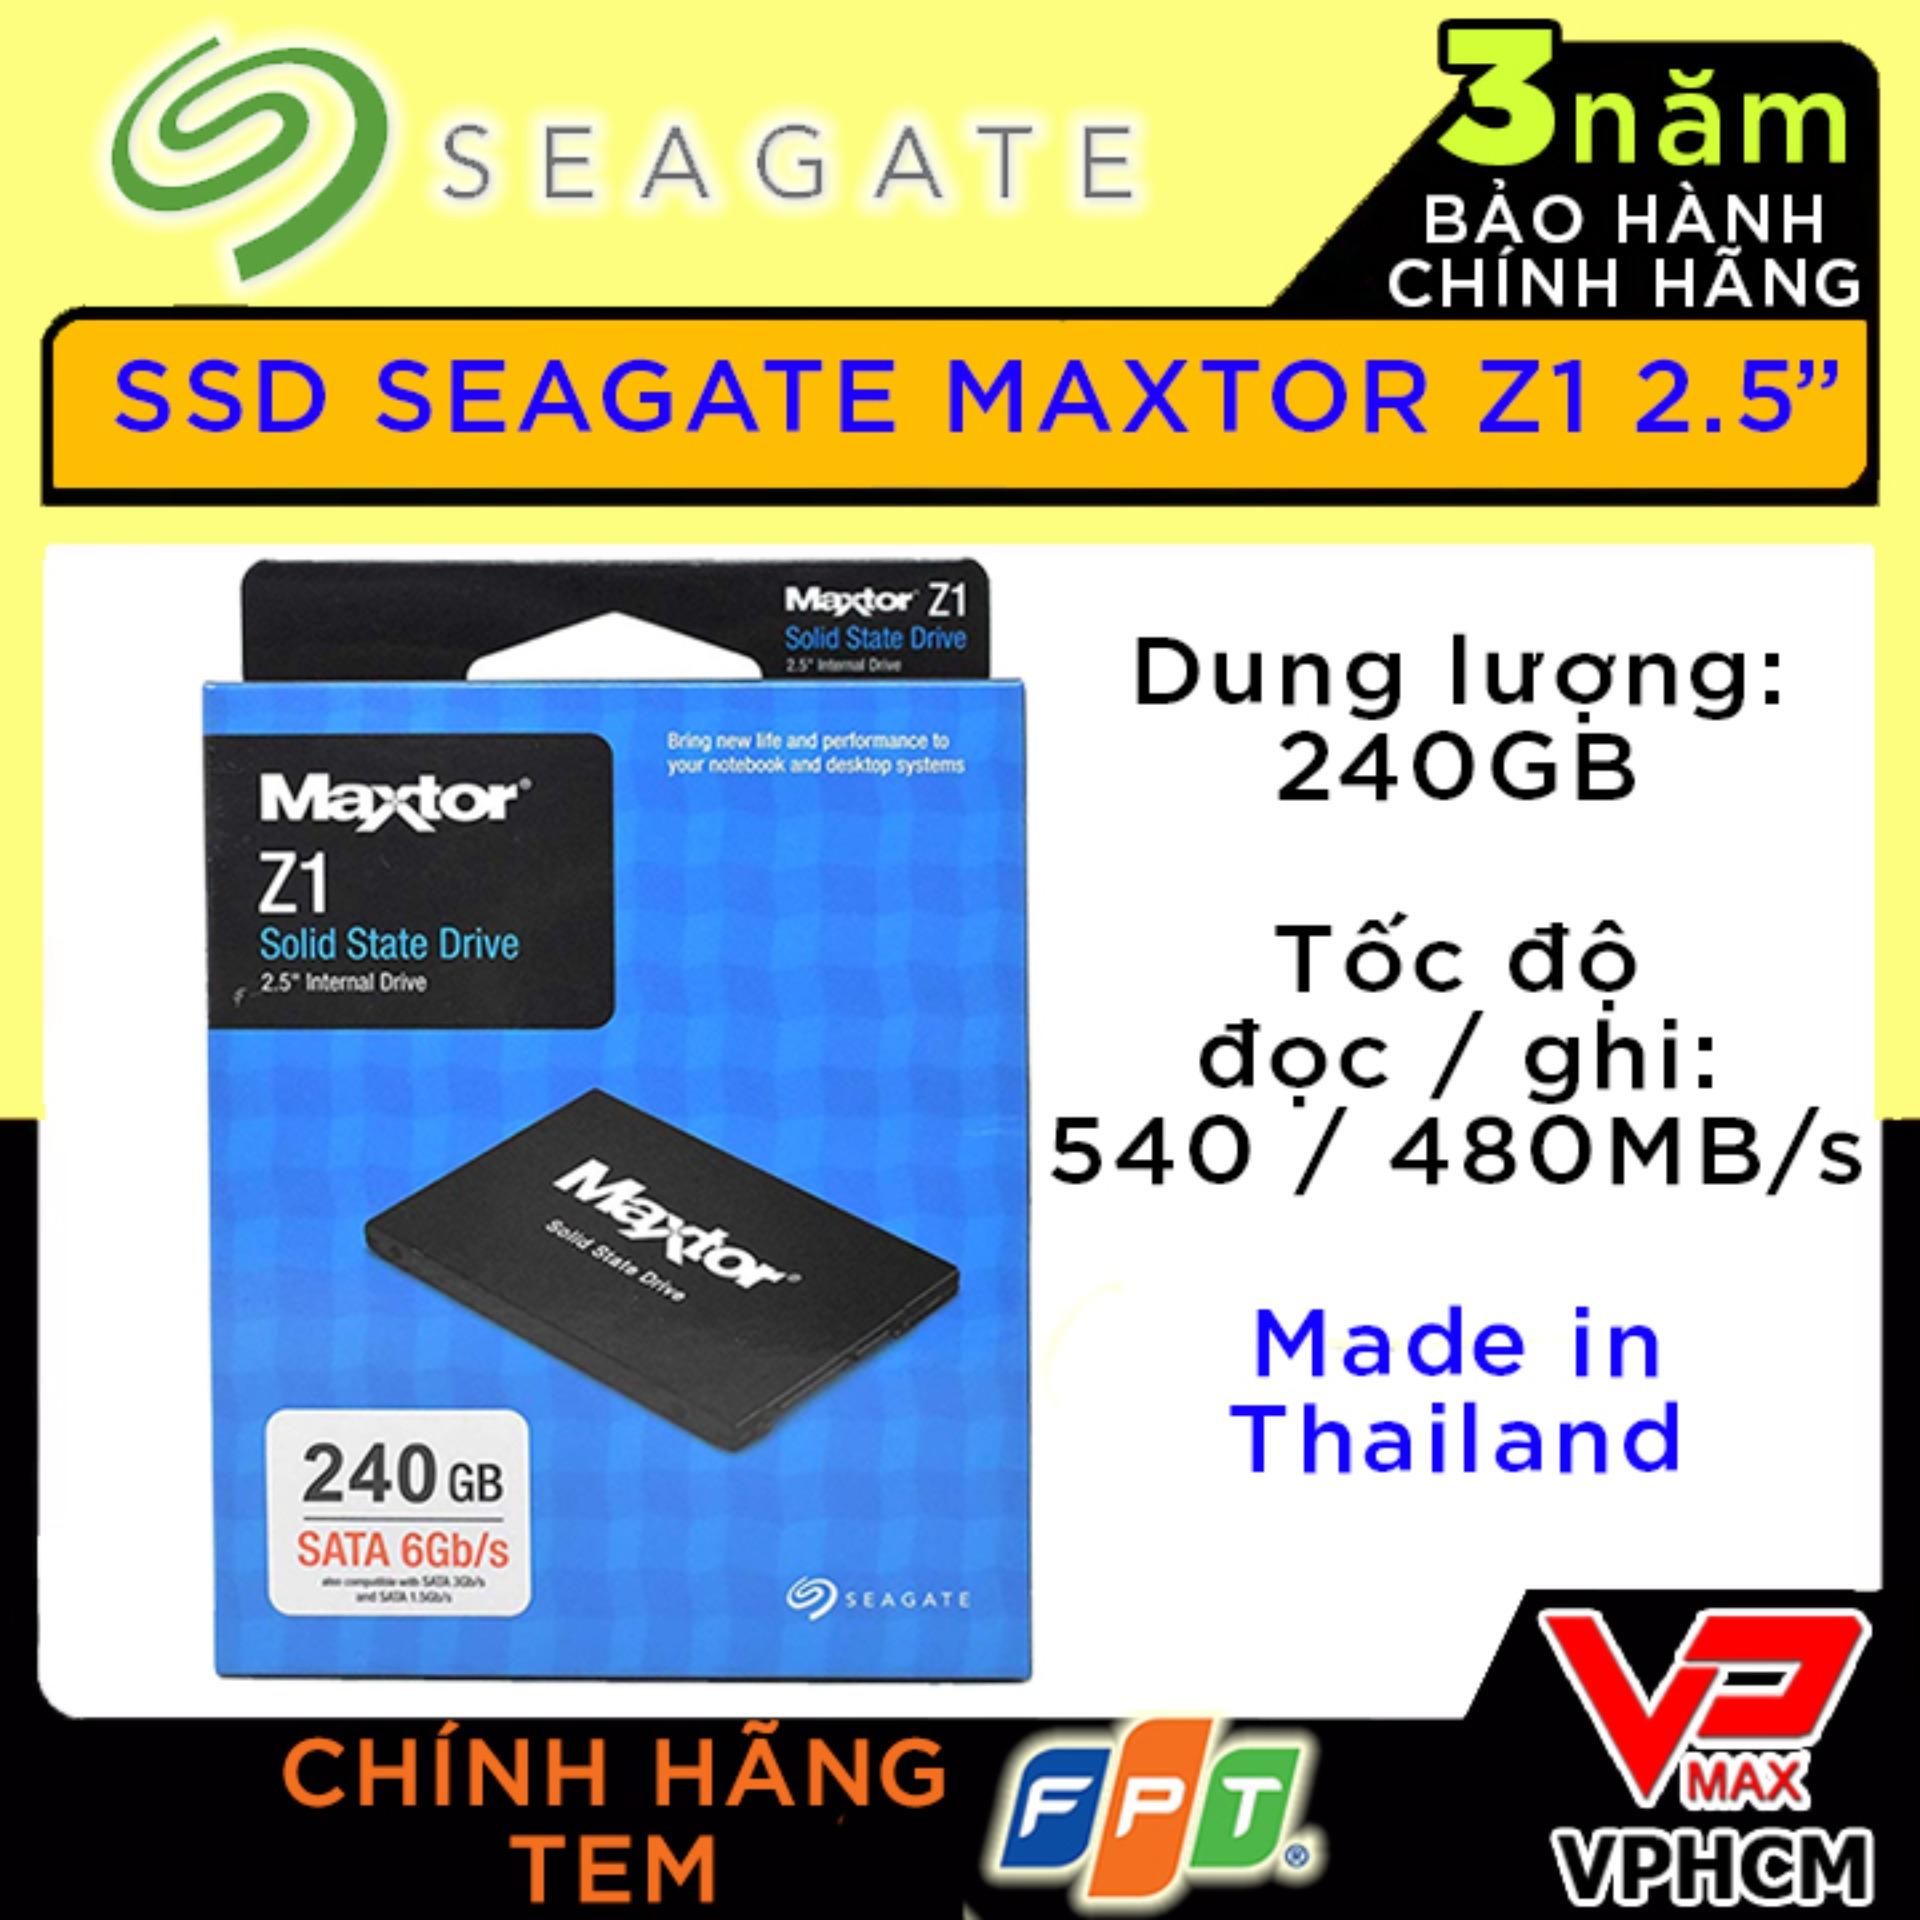 Ổ cứng SSD 240Gb Seagate Maxtor Z1 2.5 bảo hành 3 năm